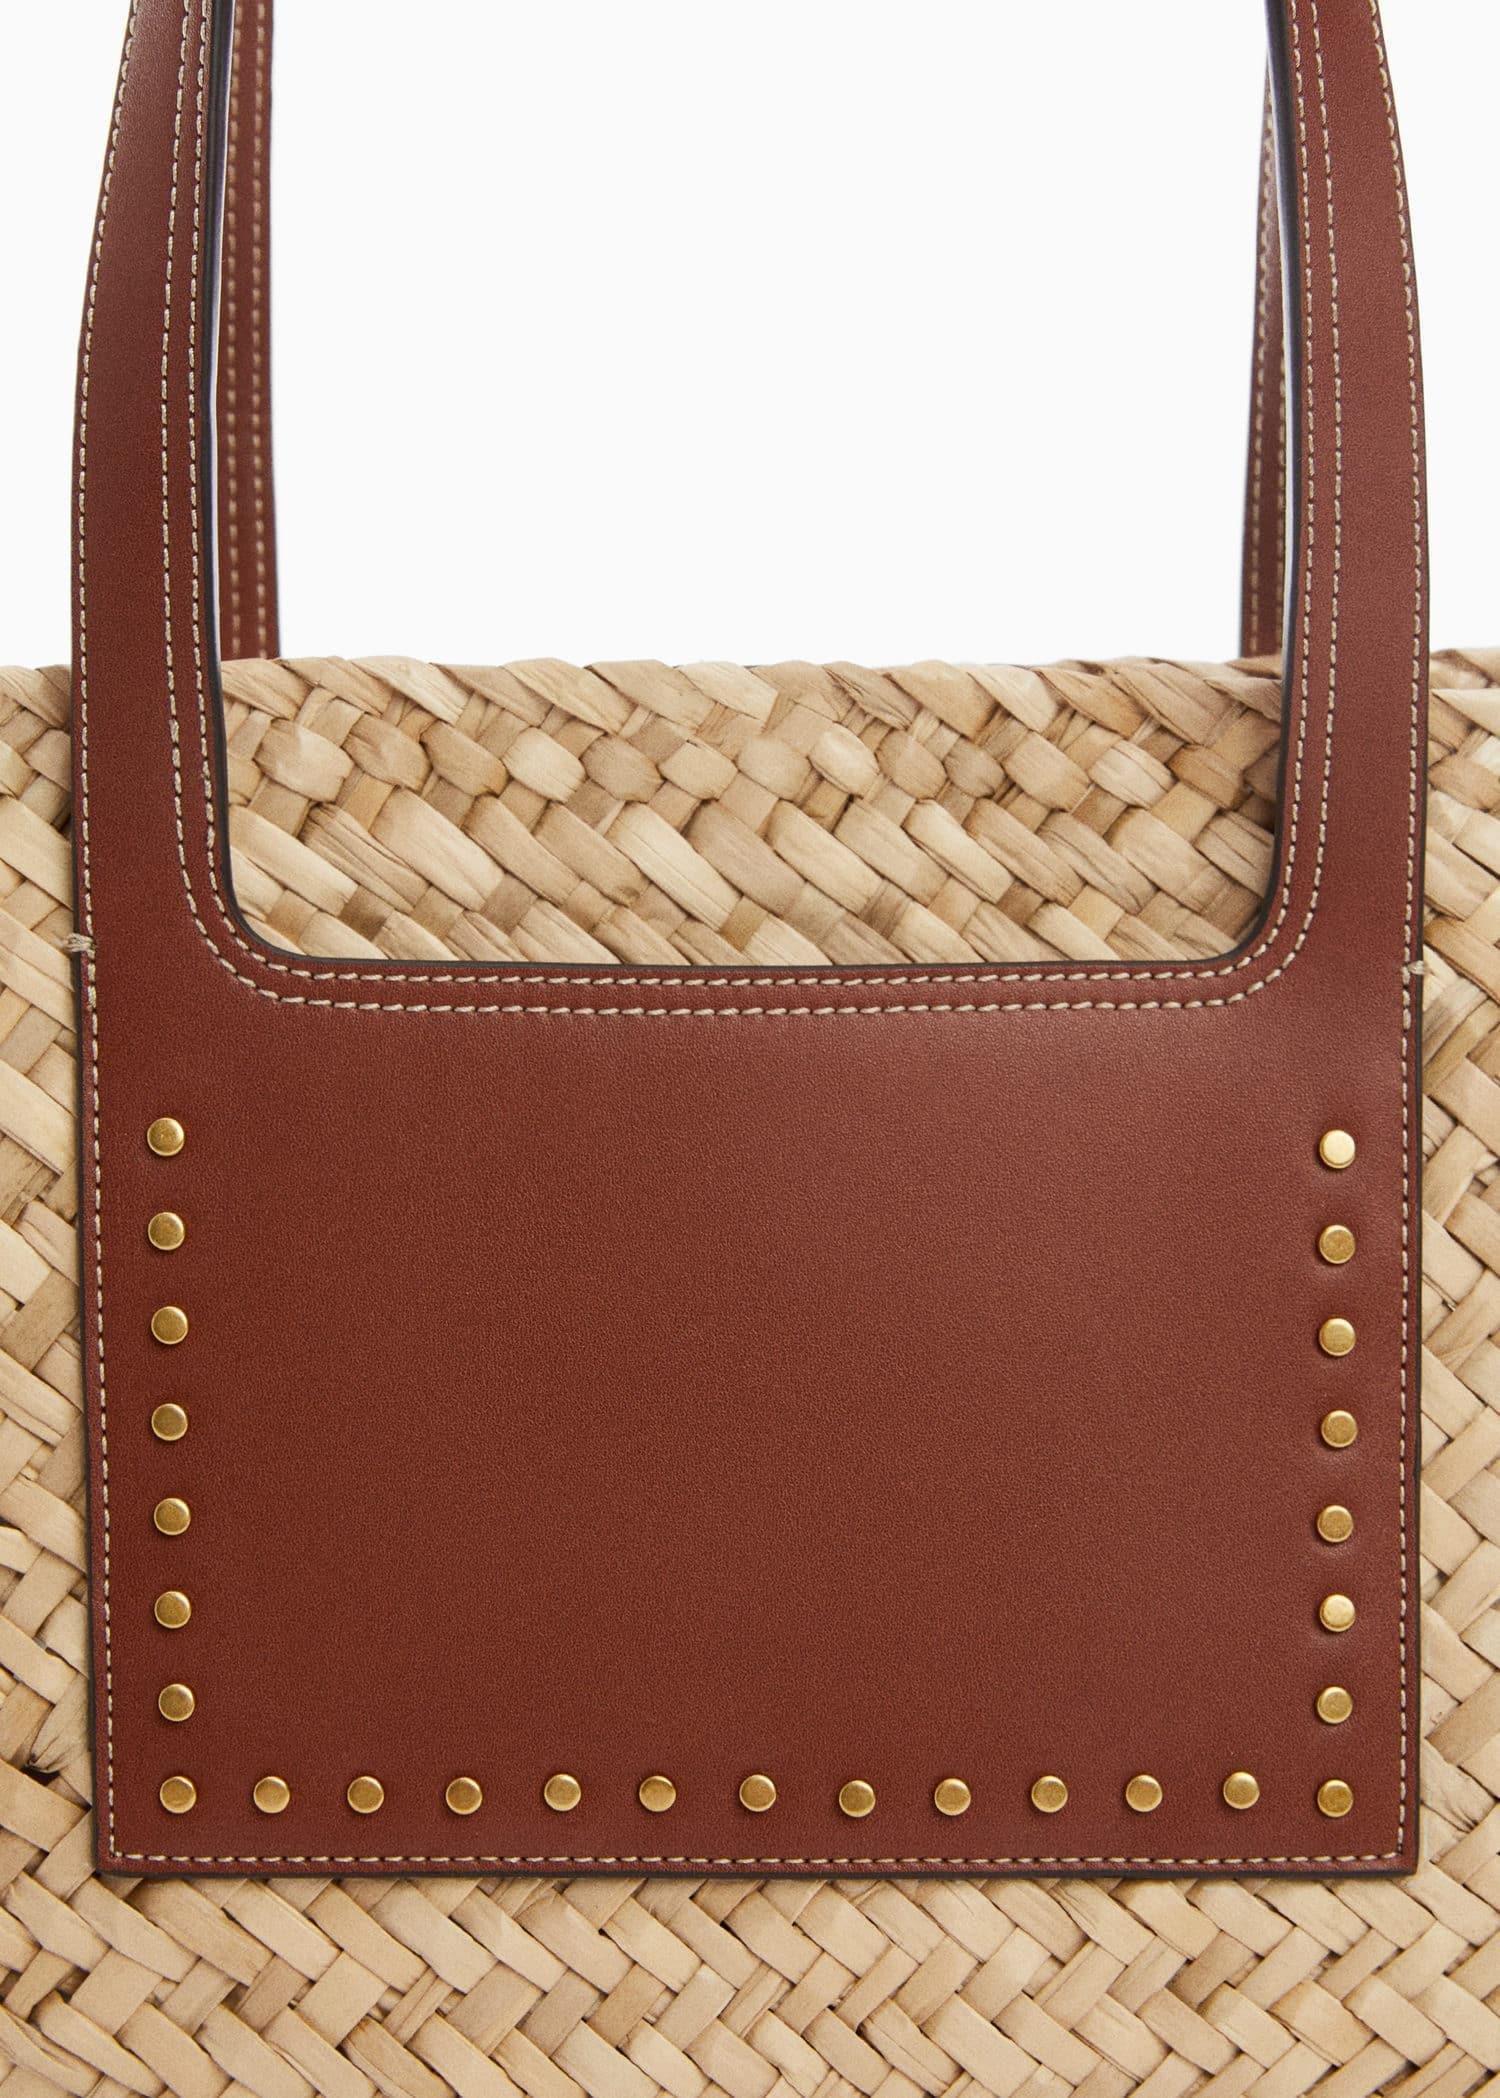 Mango - Brown Double Strap Basket Bag